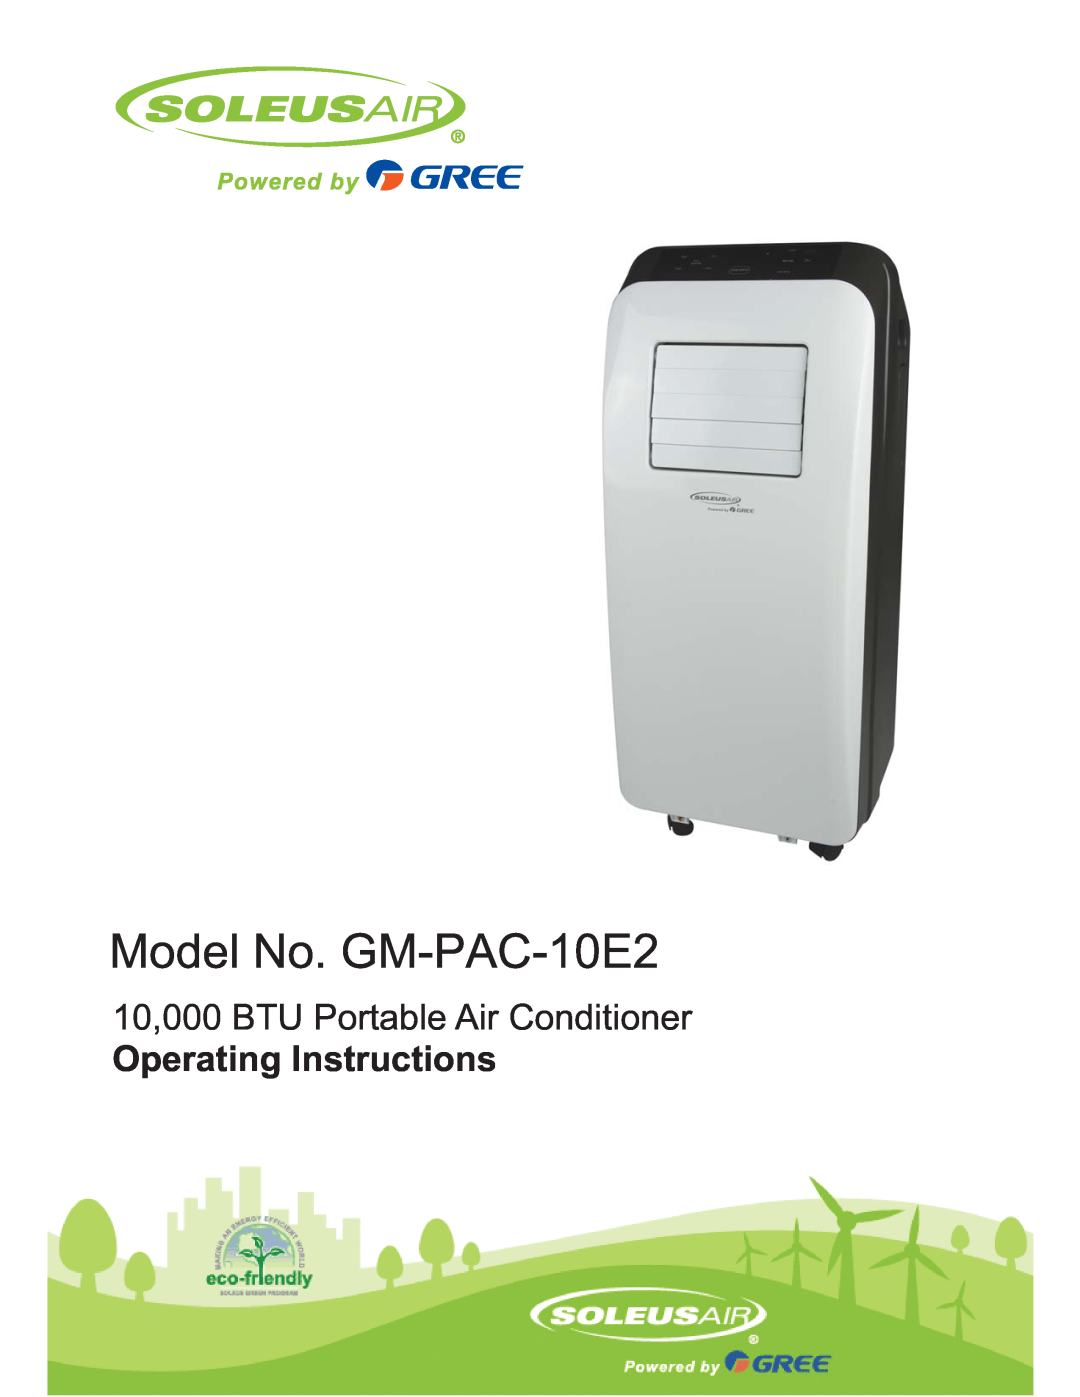 Soleus Air manual Model No. GM-PAC-10E2, 10,000 BTU Portable Air Conditioner, Operating Instructions 